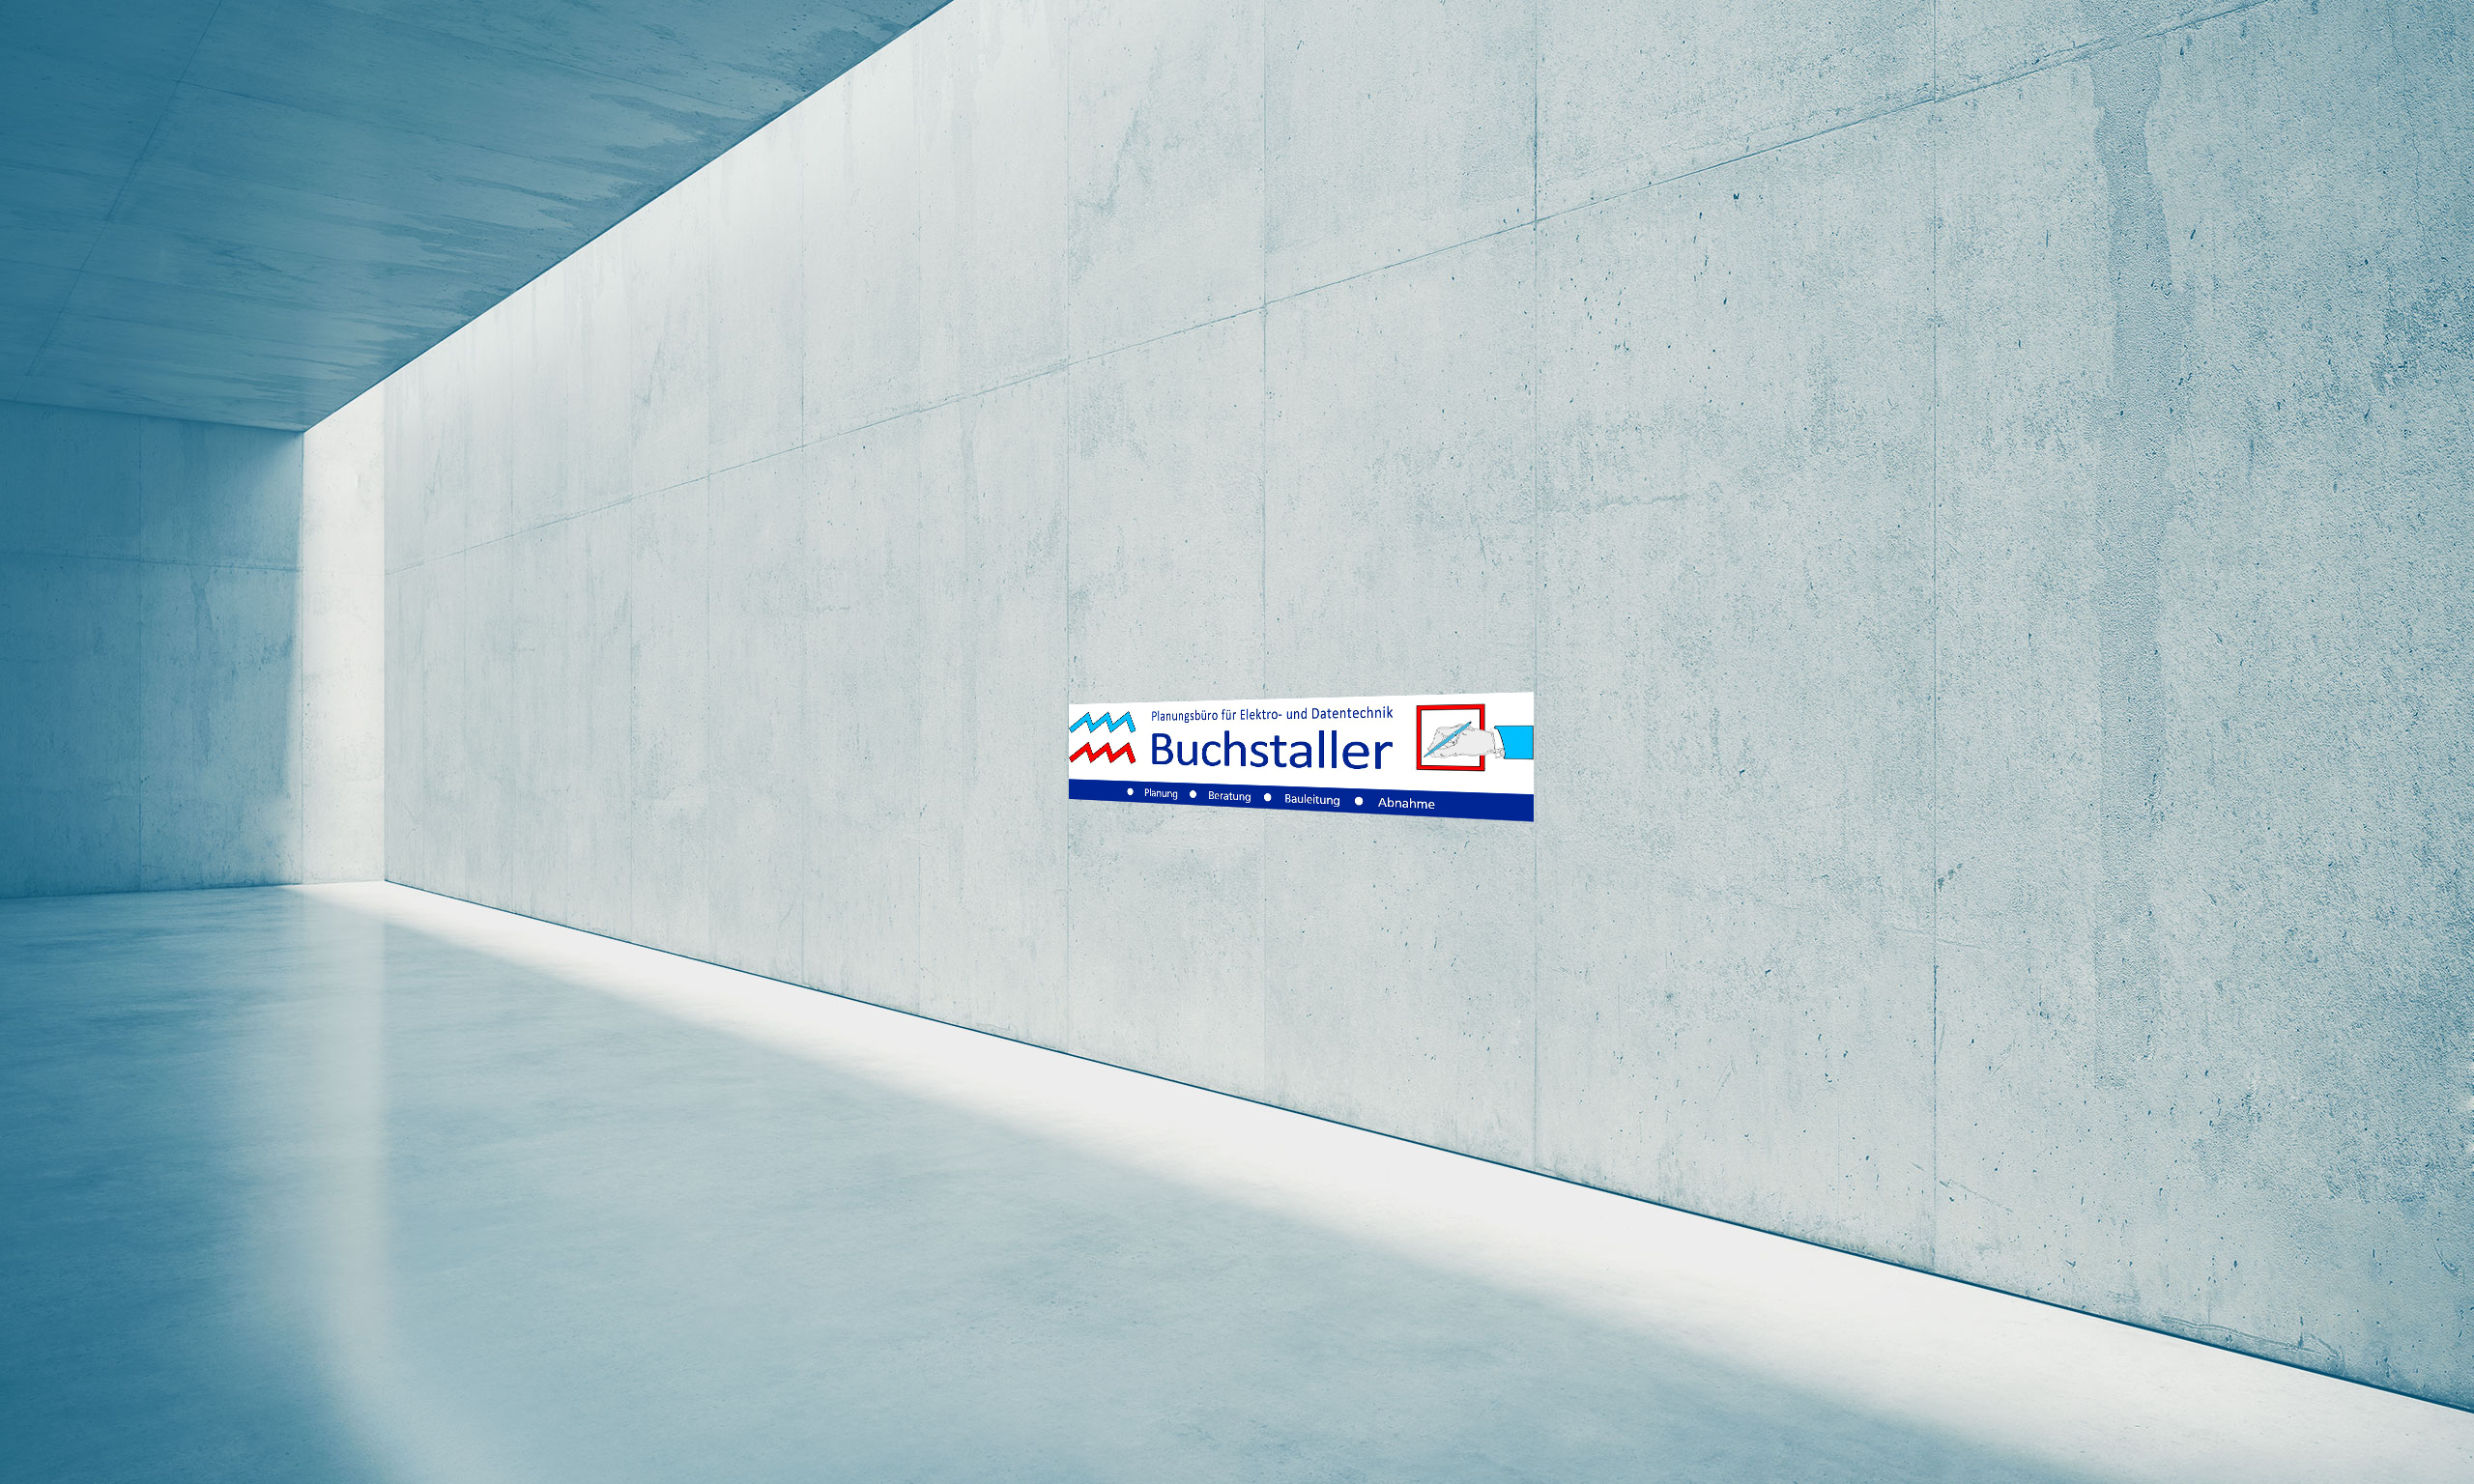 Buchstaller - Planungsbüro für Elektro- und Datentechnik Introbild - Logo auf Wand